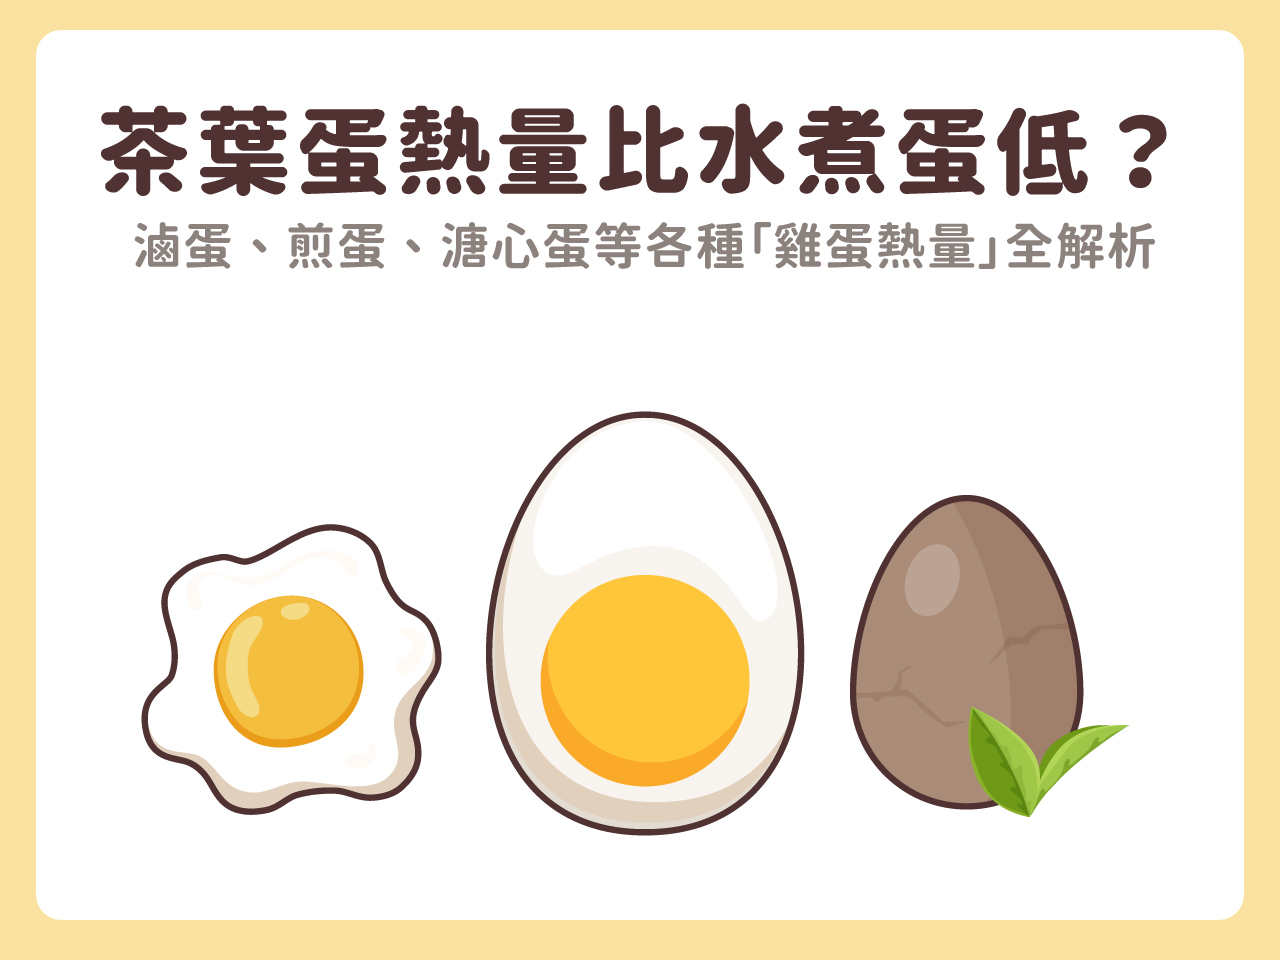 茶葉蛋熱量比一顆水煮蛋低？滷蛋、煎蛋、溏心蛋等各種「雞蛋熱量」全解析